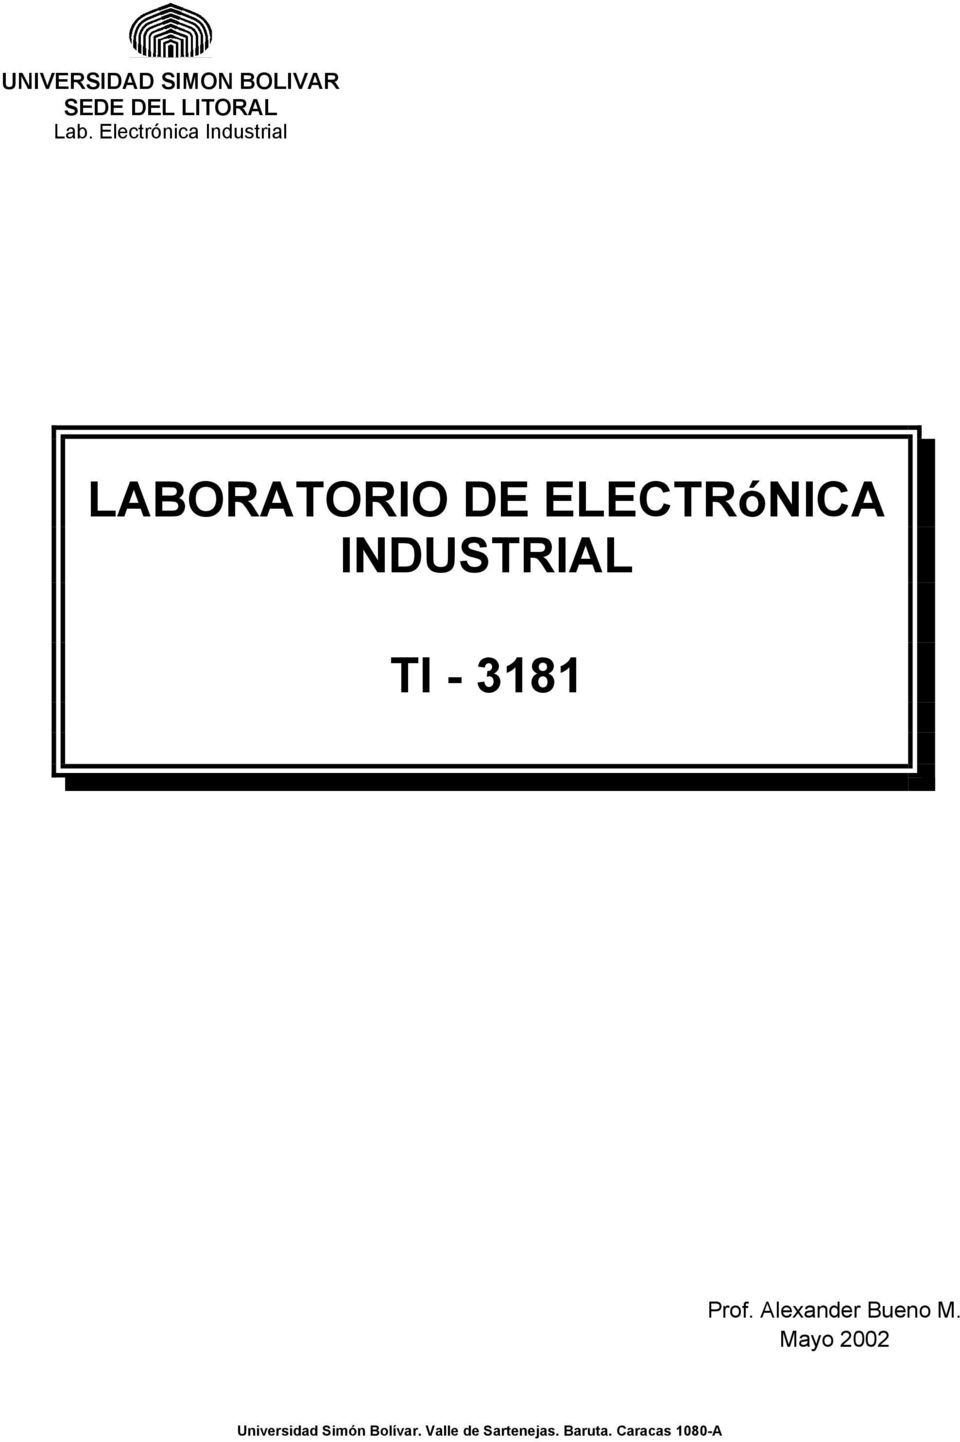 INDUSTRIAL TI - 3181